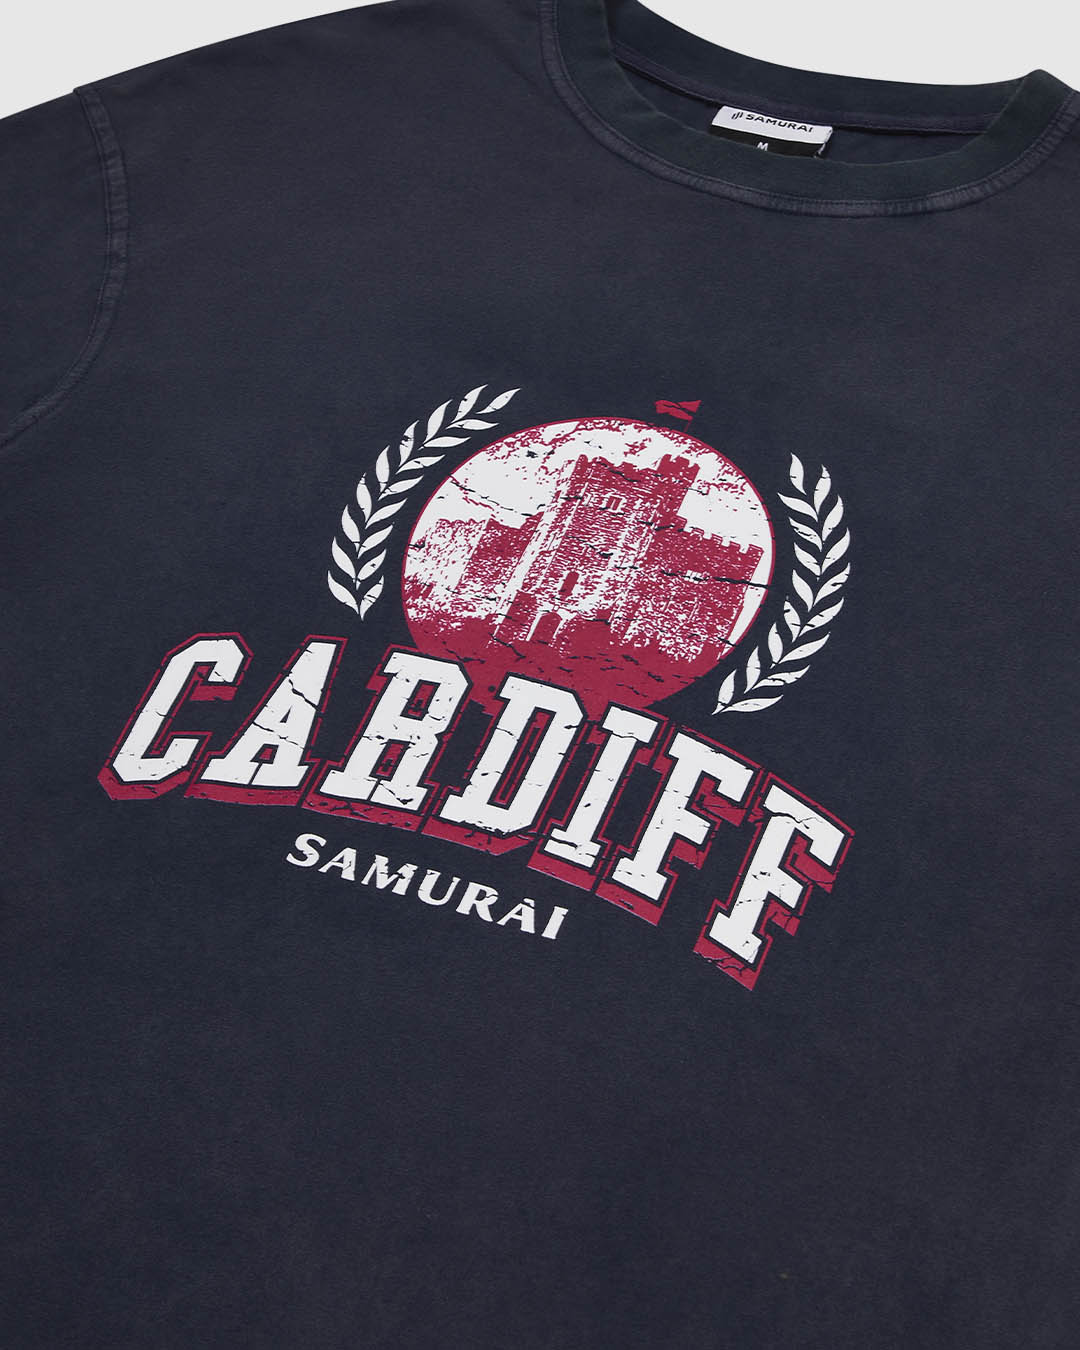 OC: 00-10 - Men's Cardiff T-Shirt - Navy